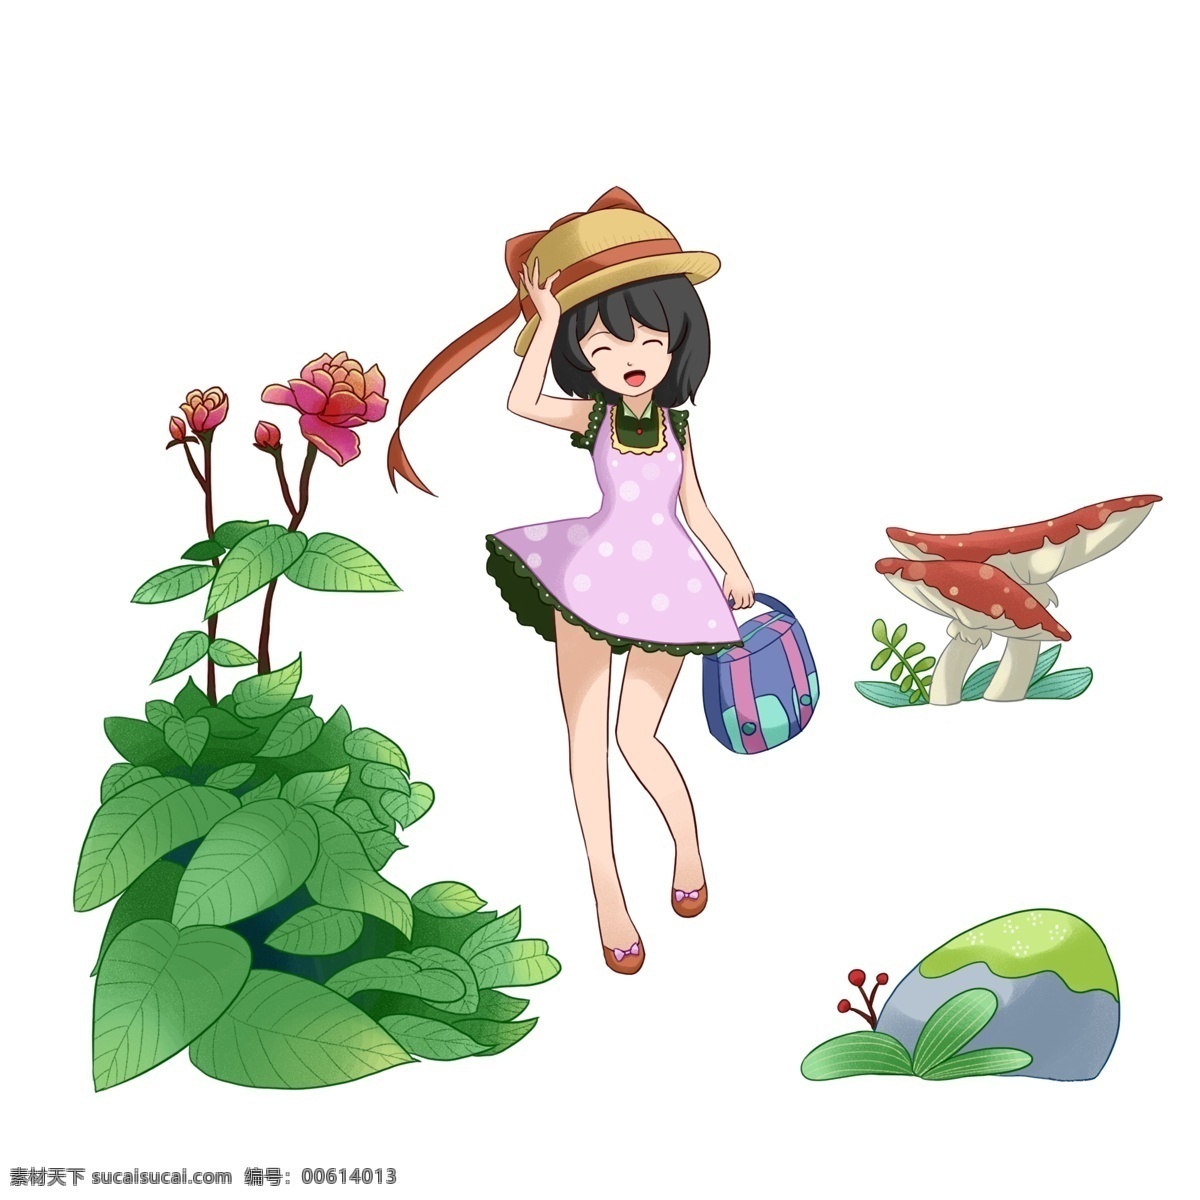 春游 女孩 公园 游玩 赏 景 插画 踏青 人物 卡通人物 漂亮的女孩 植物花朵 提包包女孩